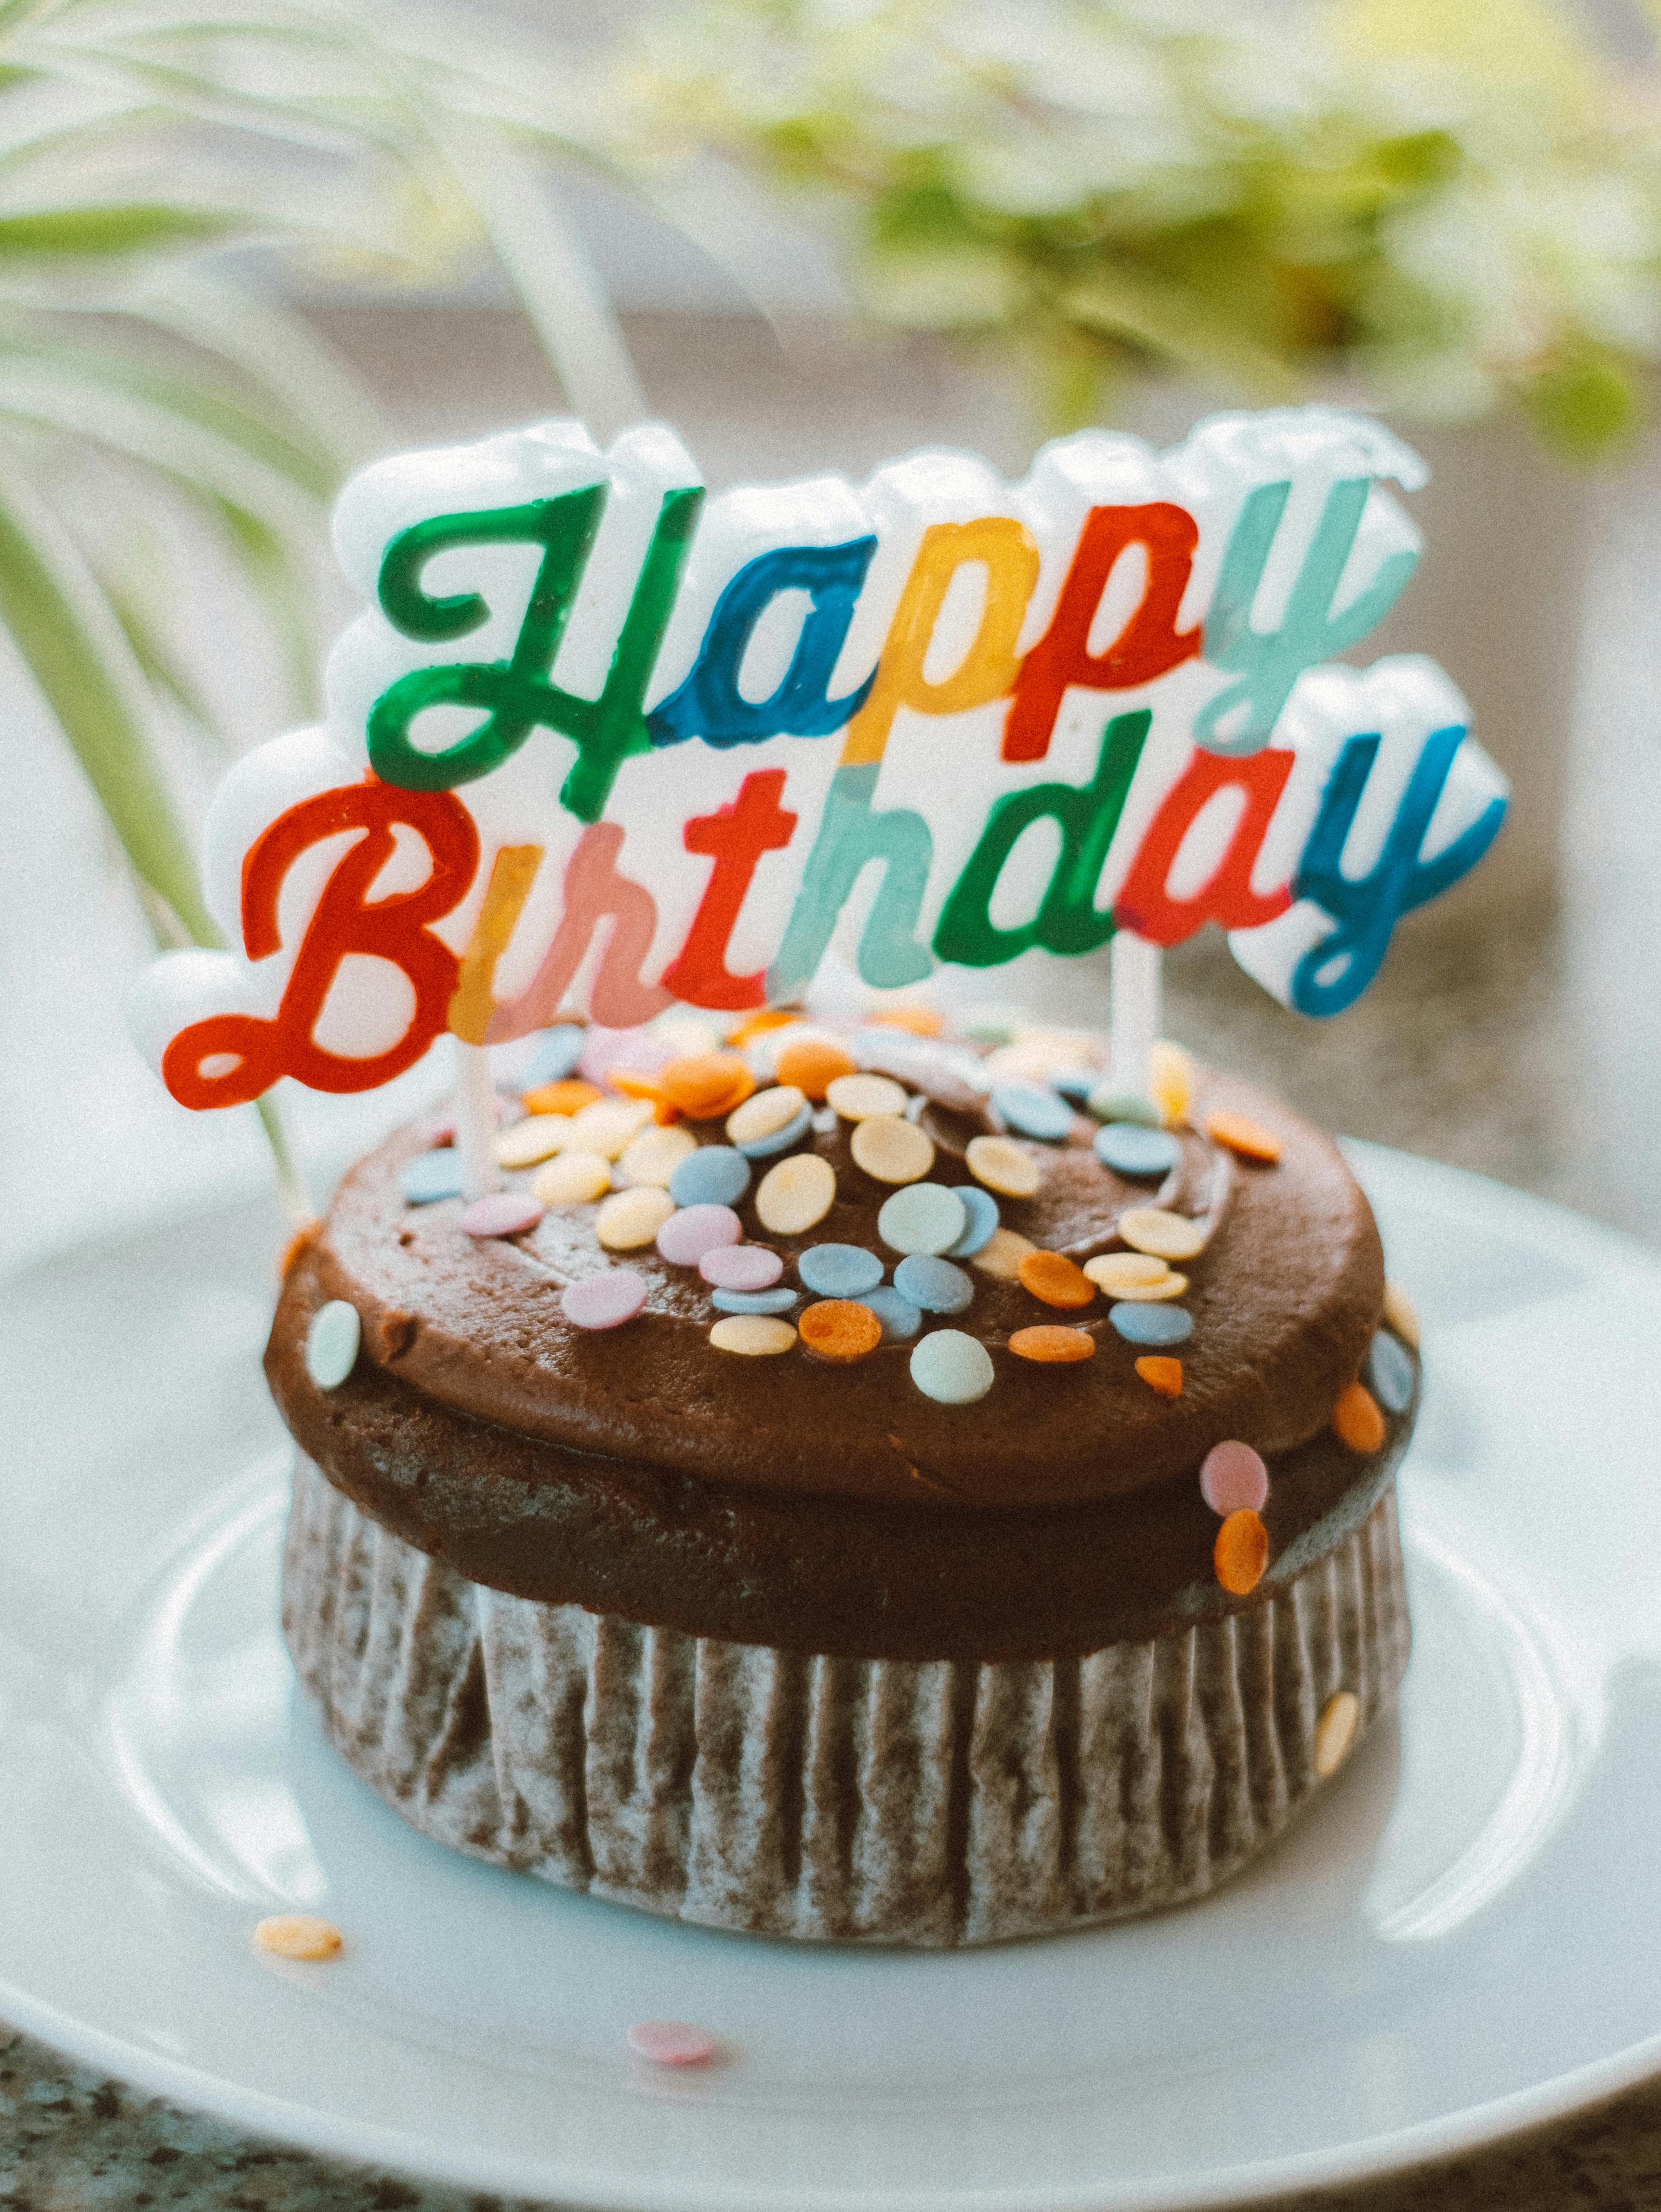 Write Name on Birthday Cakes, Cakes With Name, Name Birthday Cakes